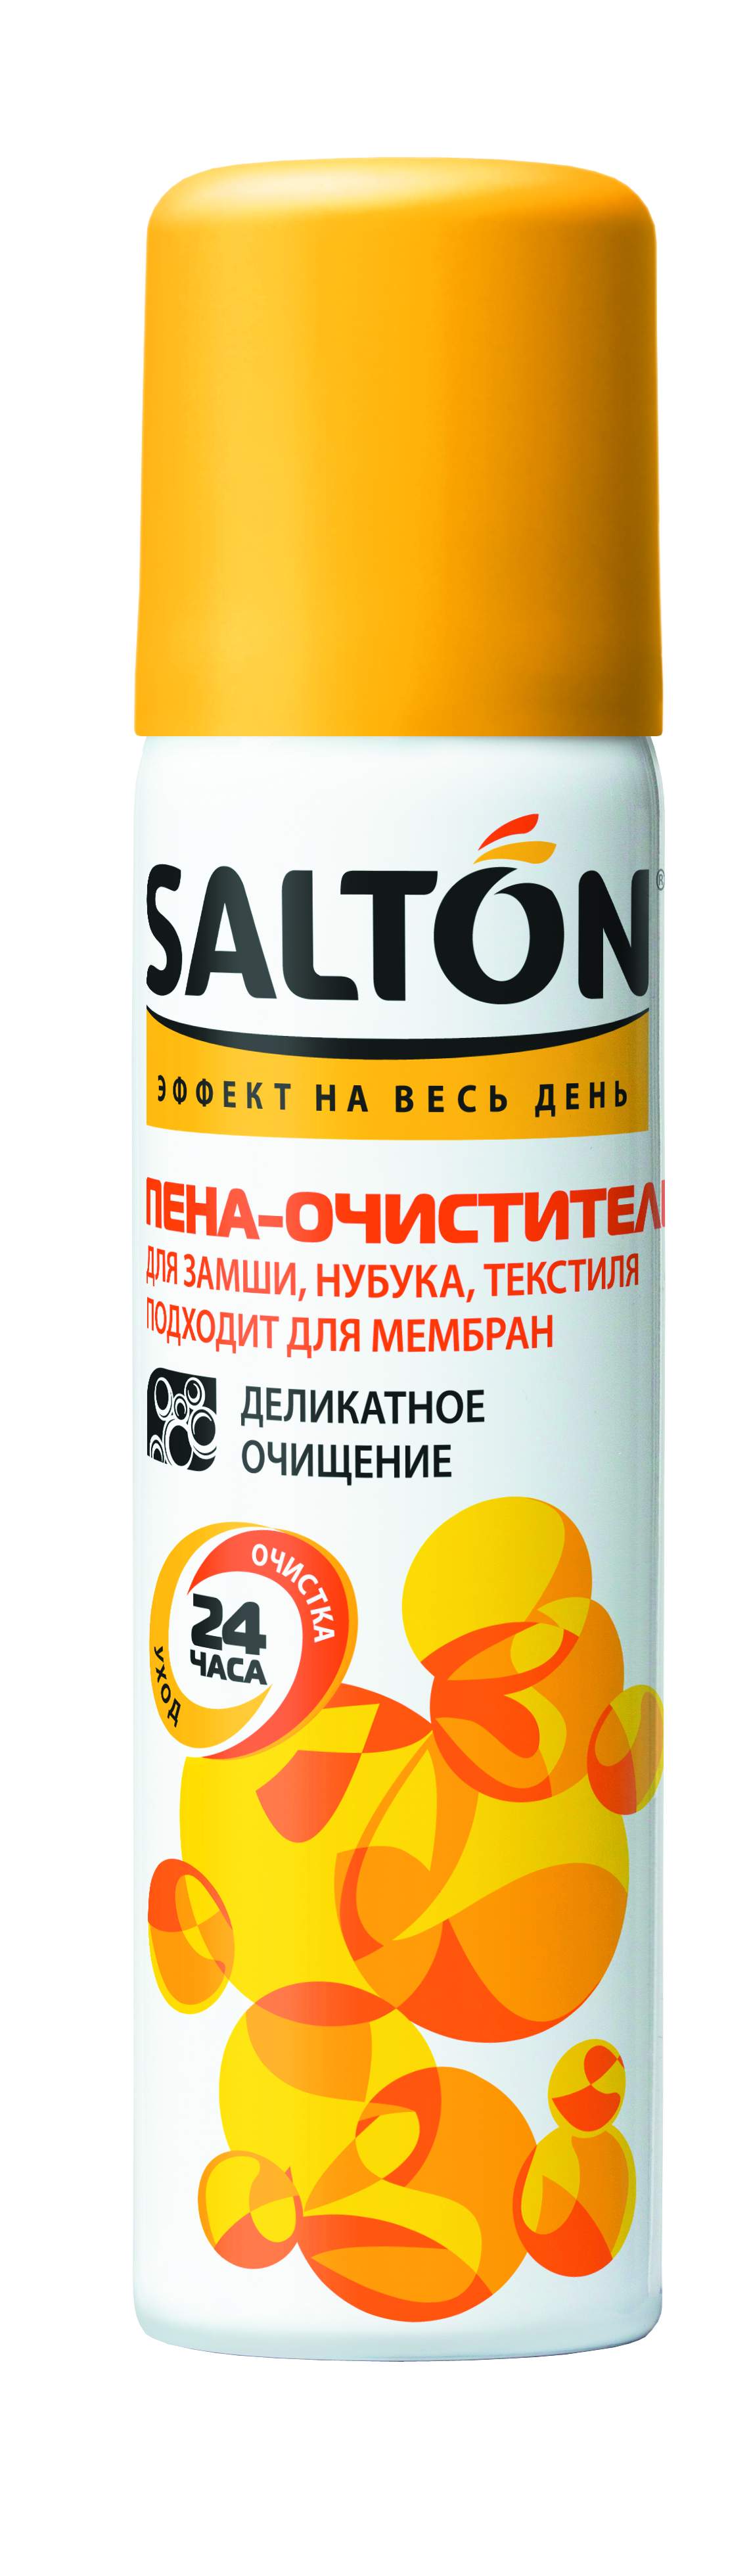 SALTON Пена-очиститель для изделий из ткани и замши в Киеве